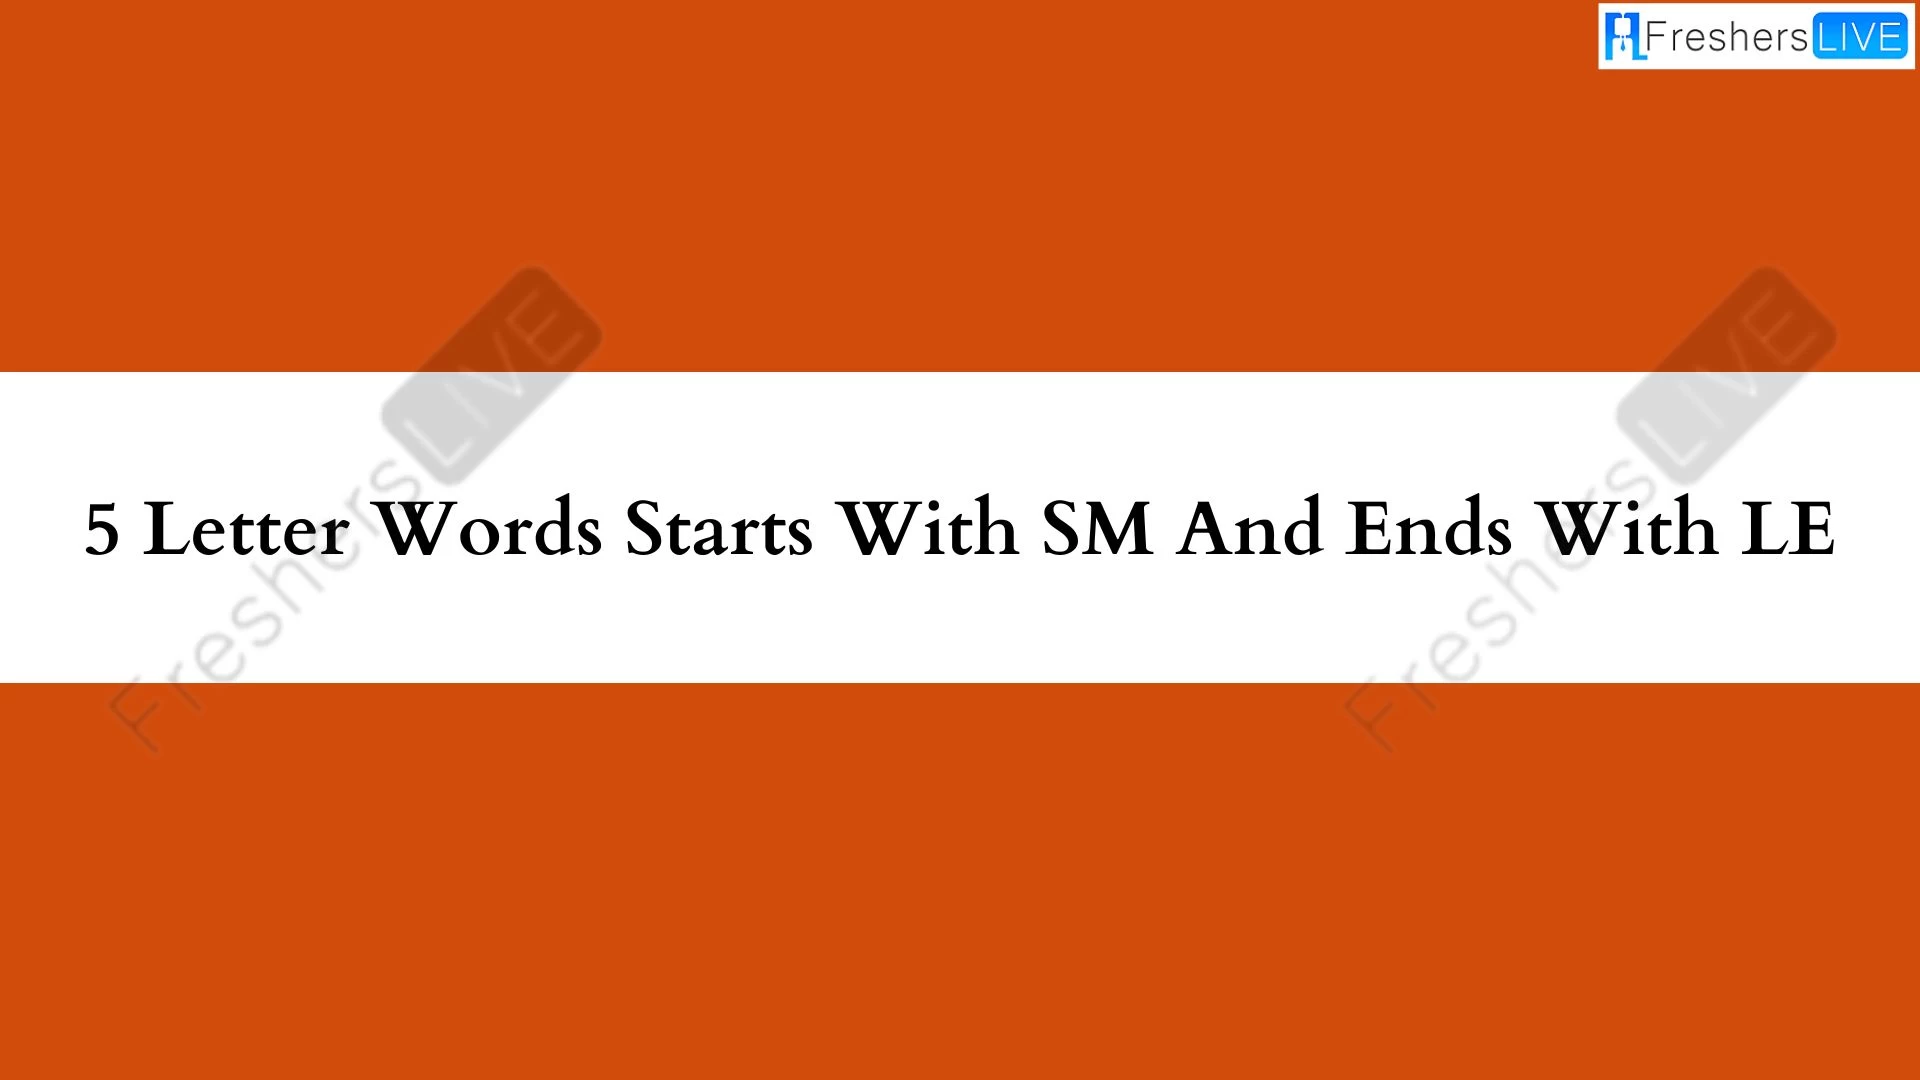 Palabras de 5 letras que empiezan con SM y terminan con LE.